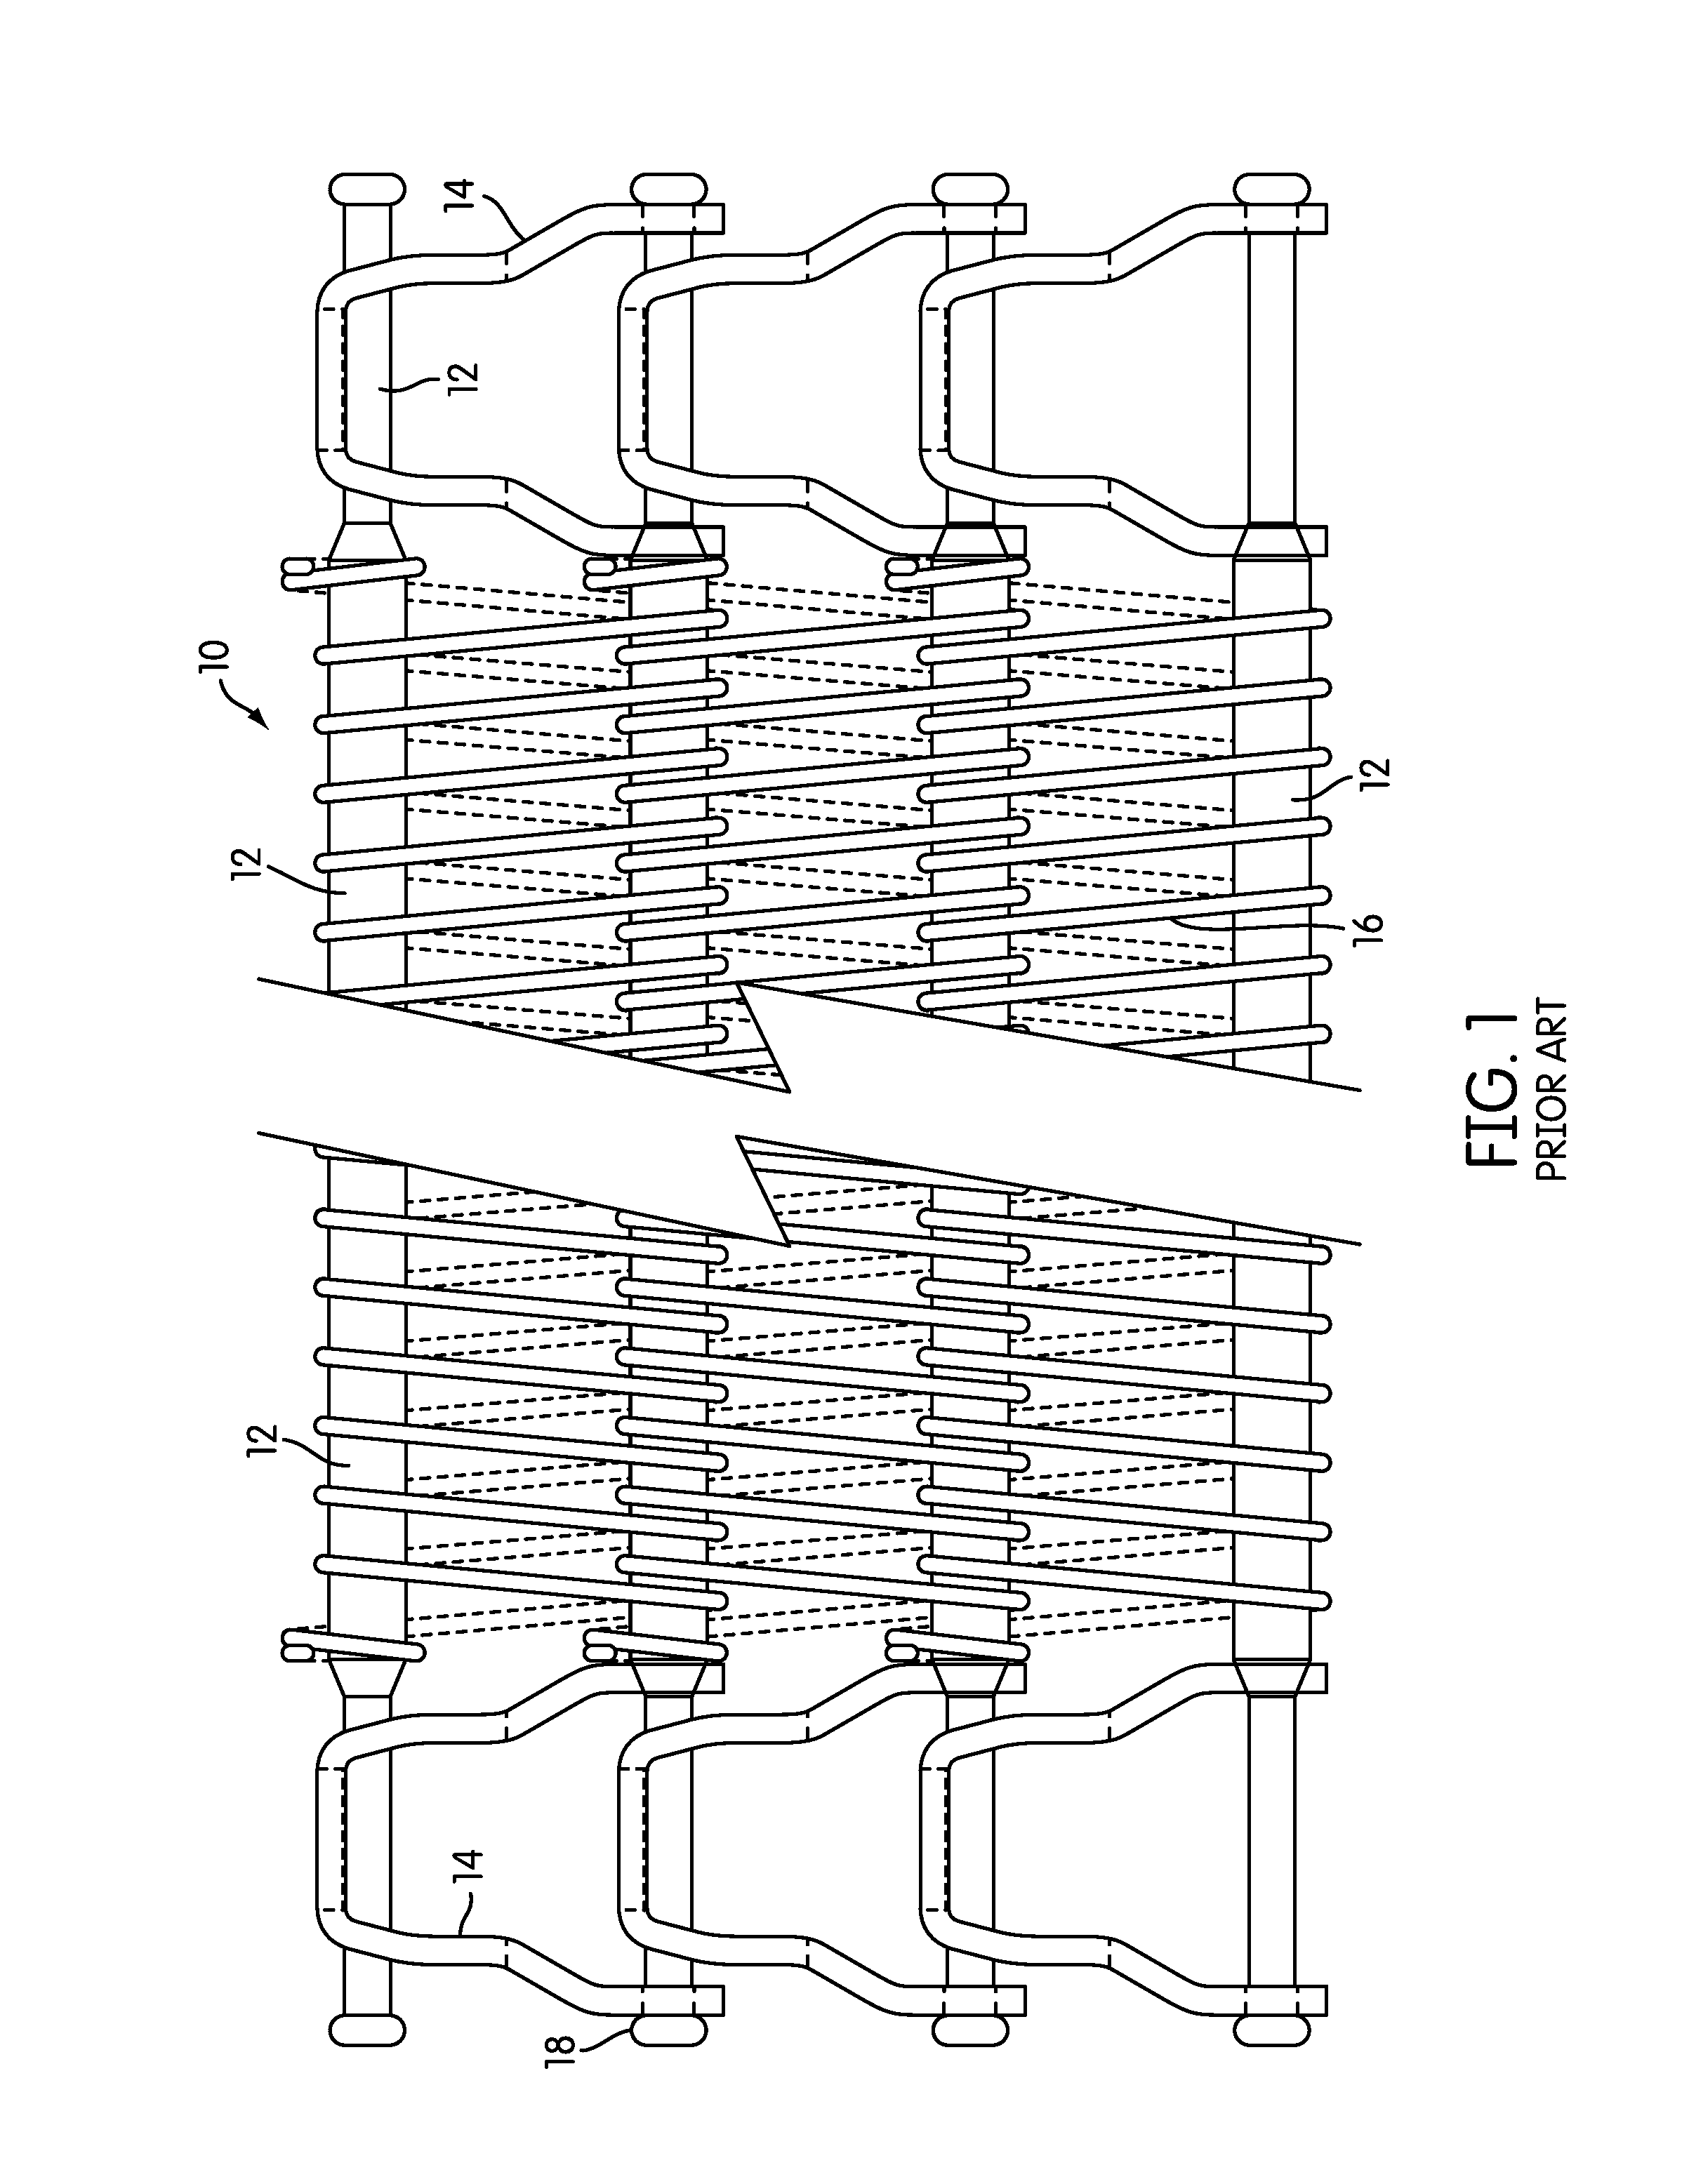 Conveyor belt with composite link